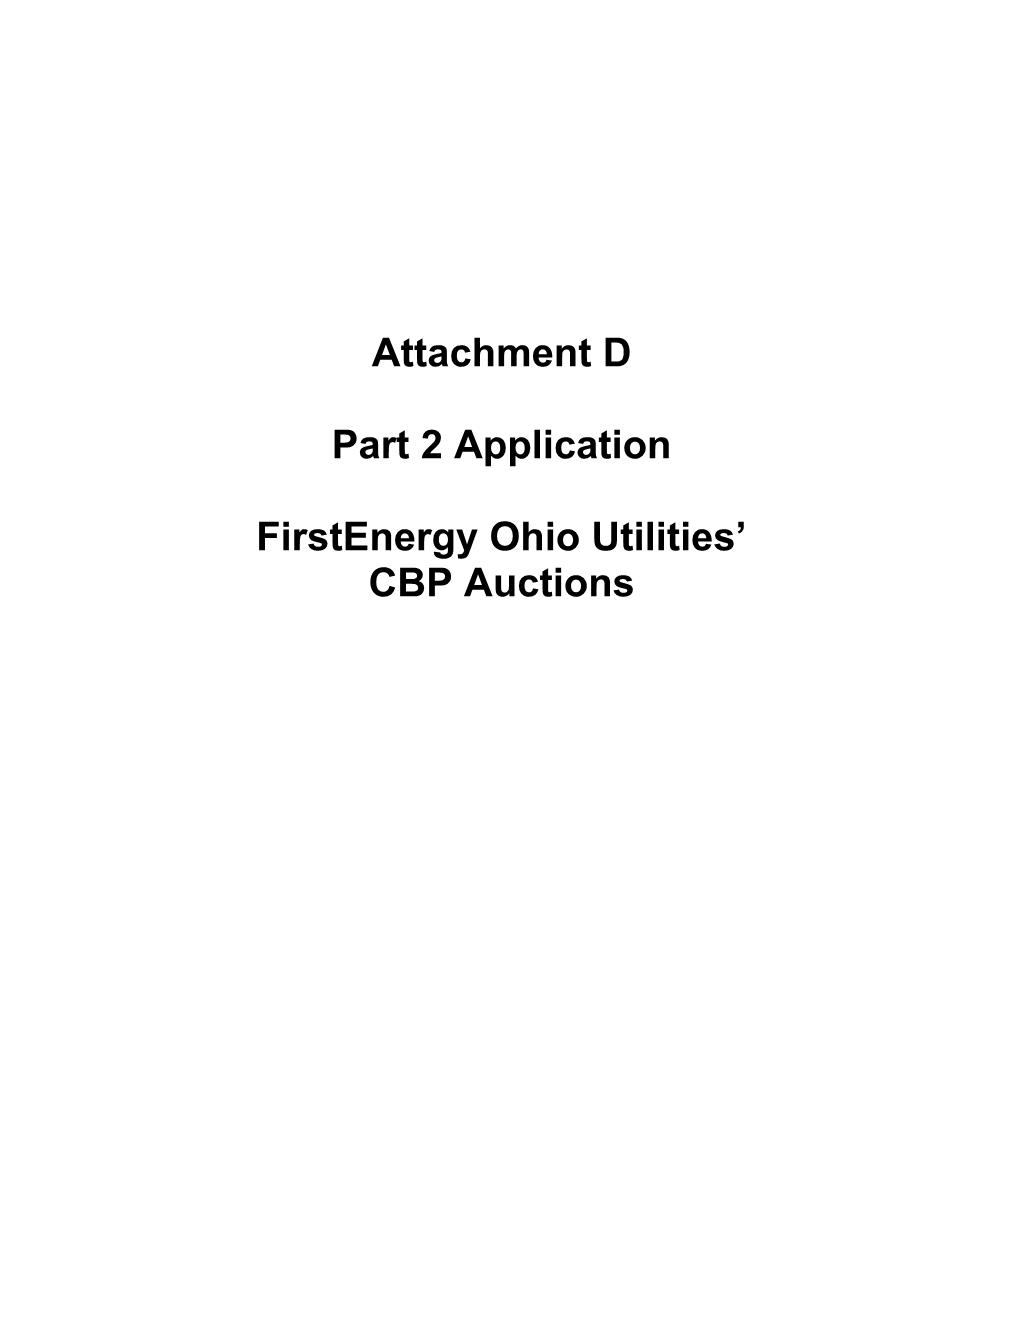 Part 2 Application: Firstenergy Ohio Utilities CBP Auctionsattachment D